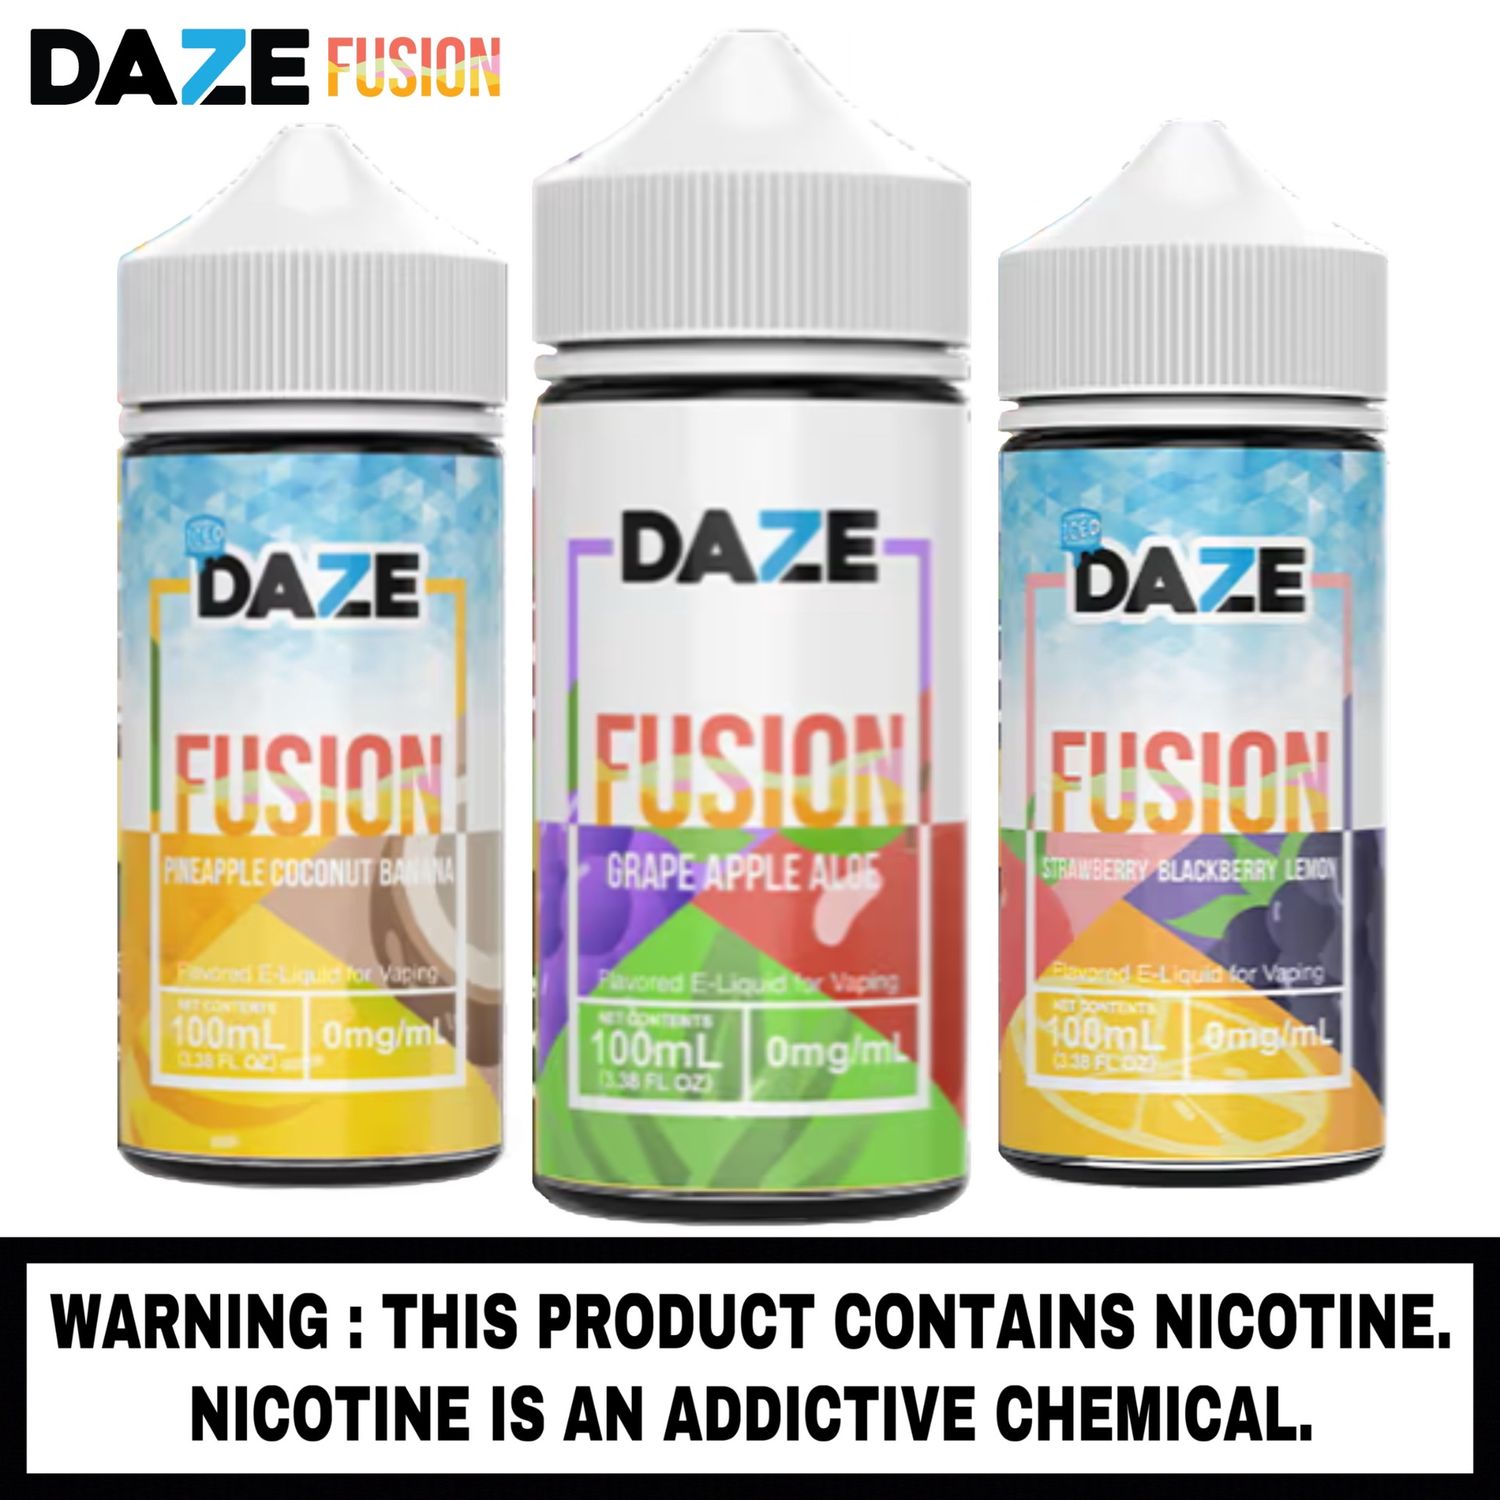 7 Daze™ Fusion E-liquid